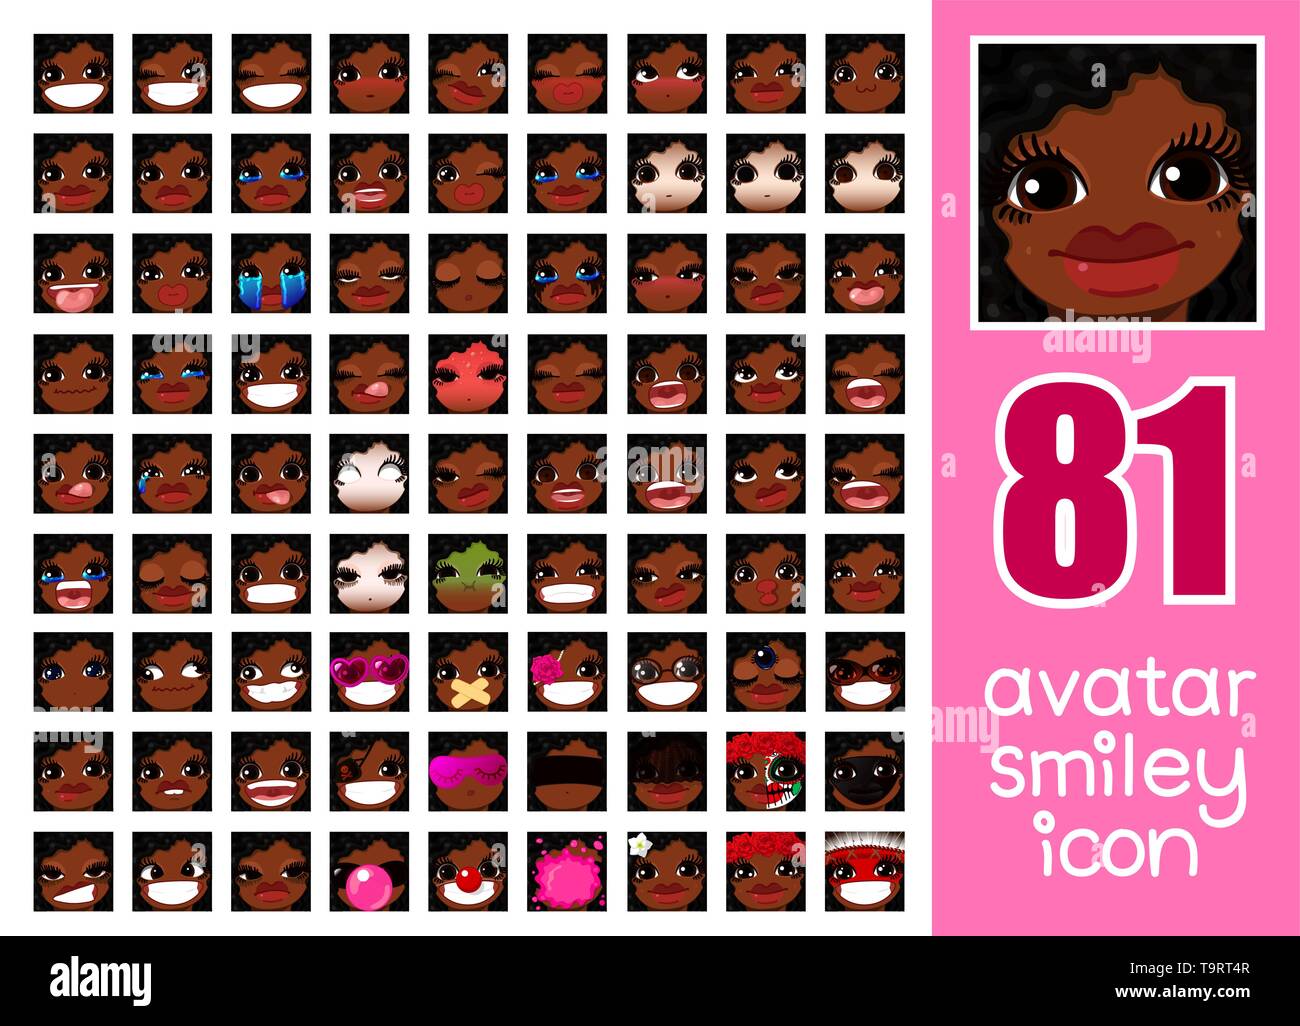 Vector SET-81 Médias sociaux avatars girl Illustration de Vecteur